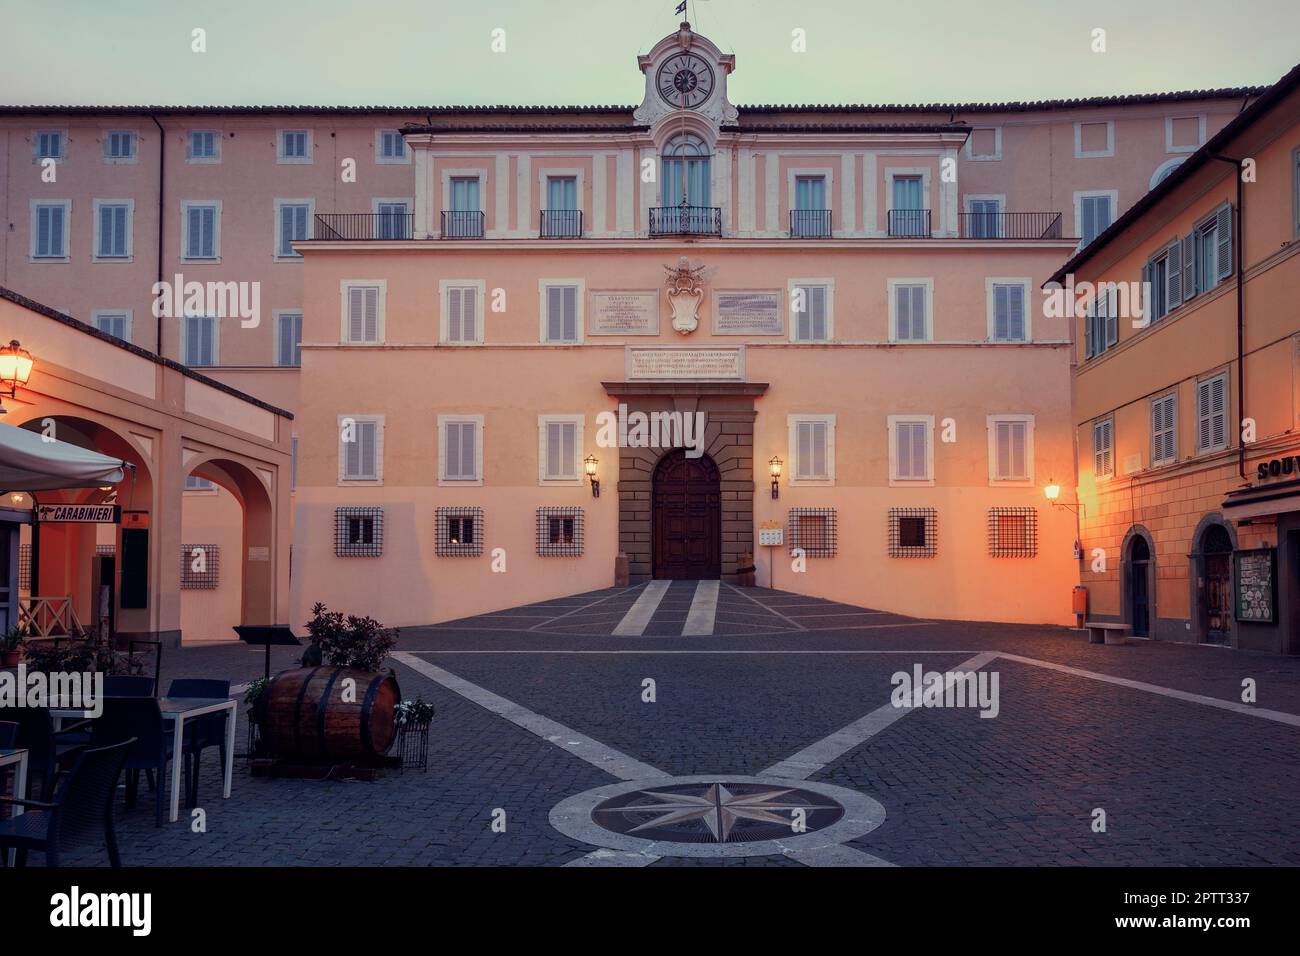 Apostolic palace in Castel Gandolfo, Rome, Italy Stock Photo